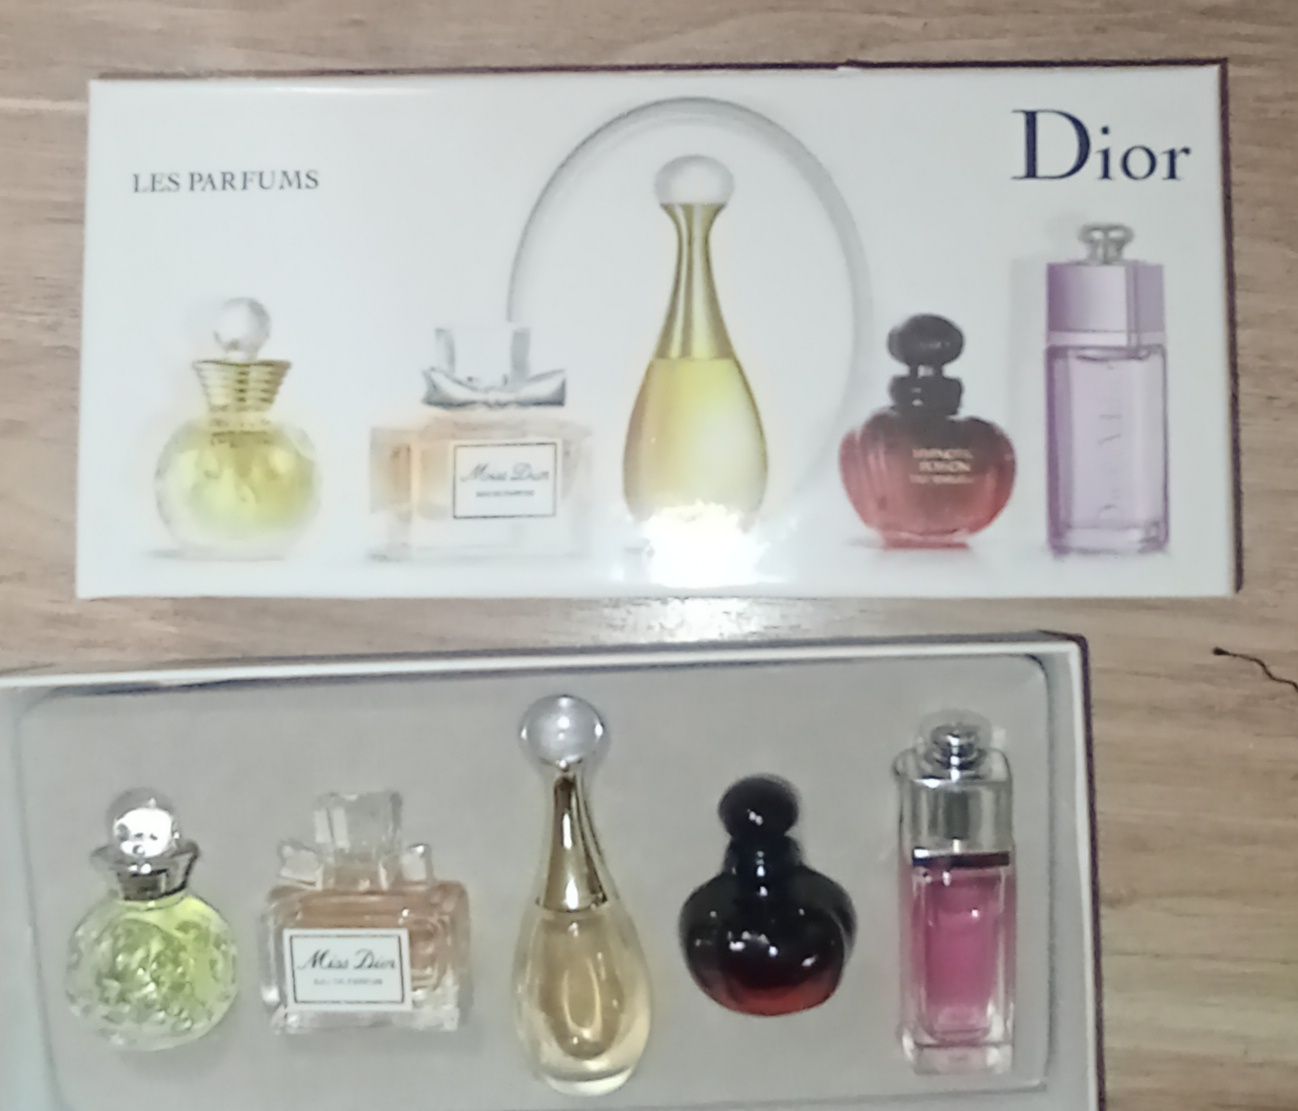 Atir Dior 5talik toplam